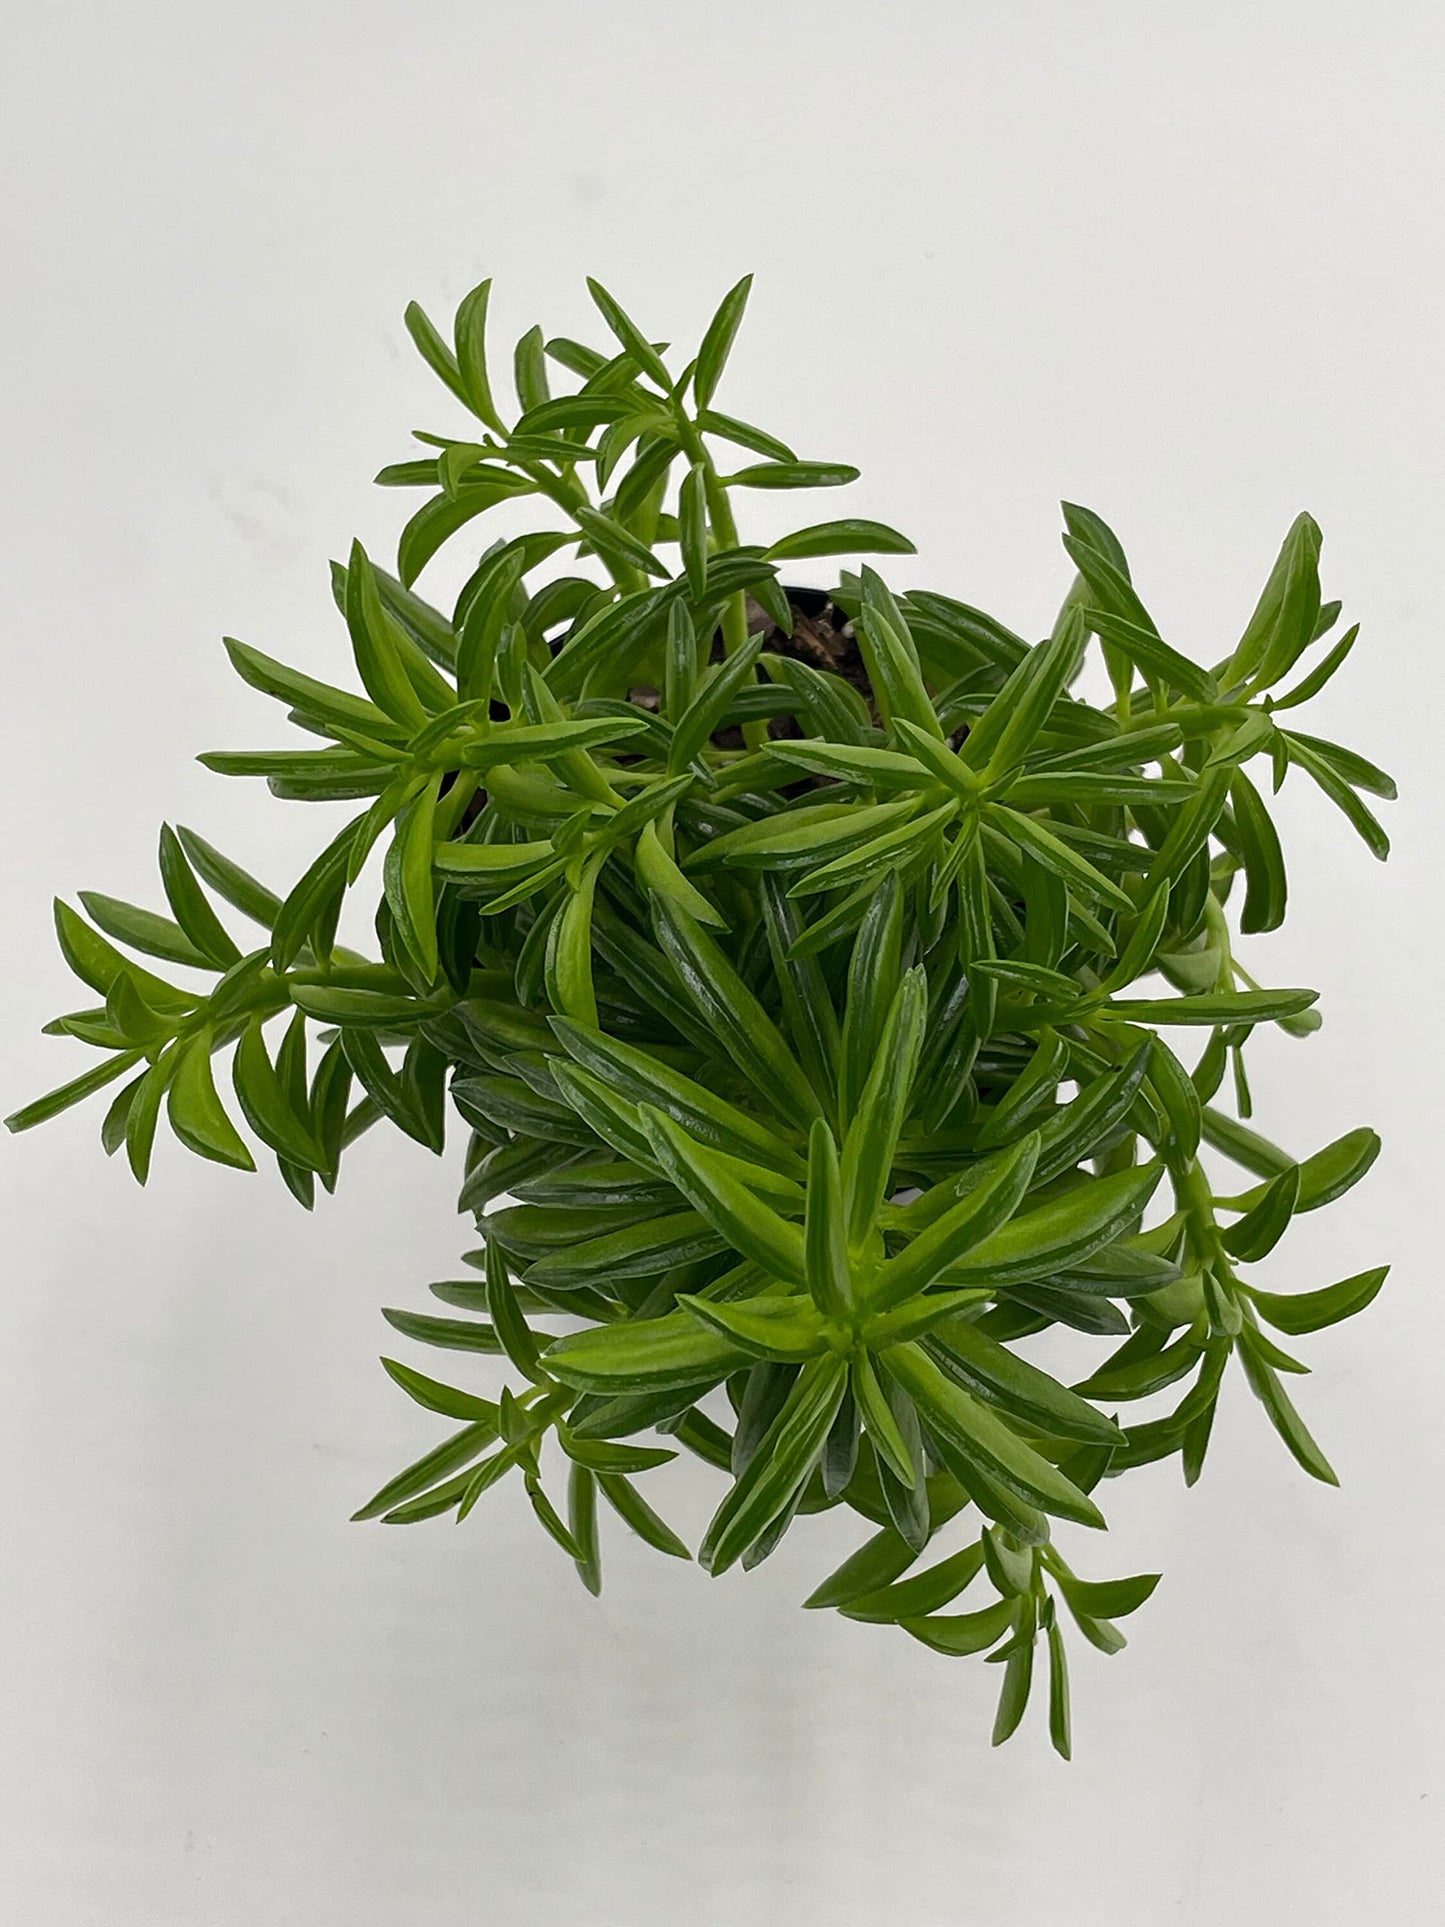 Taco Plant/Peperomia axillaris/Happy Bean/Peperomia ferreyrae Yunck/philodendron selloum, Horsehead philodendron, Tree philodendron